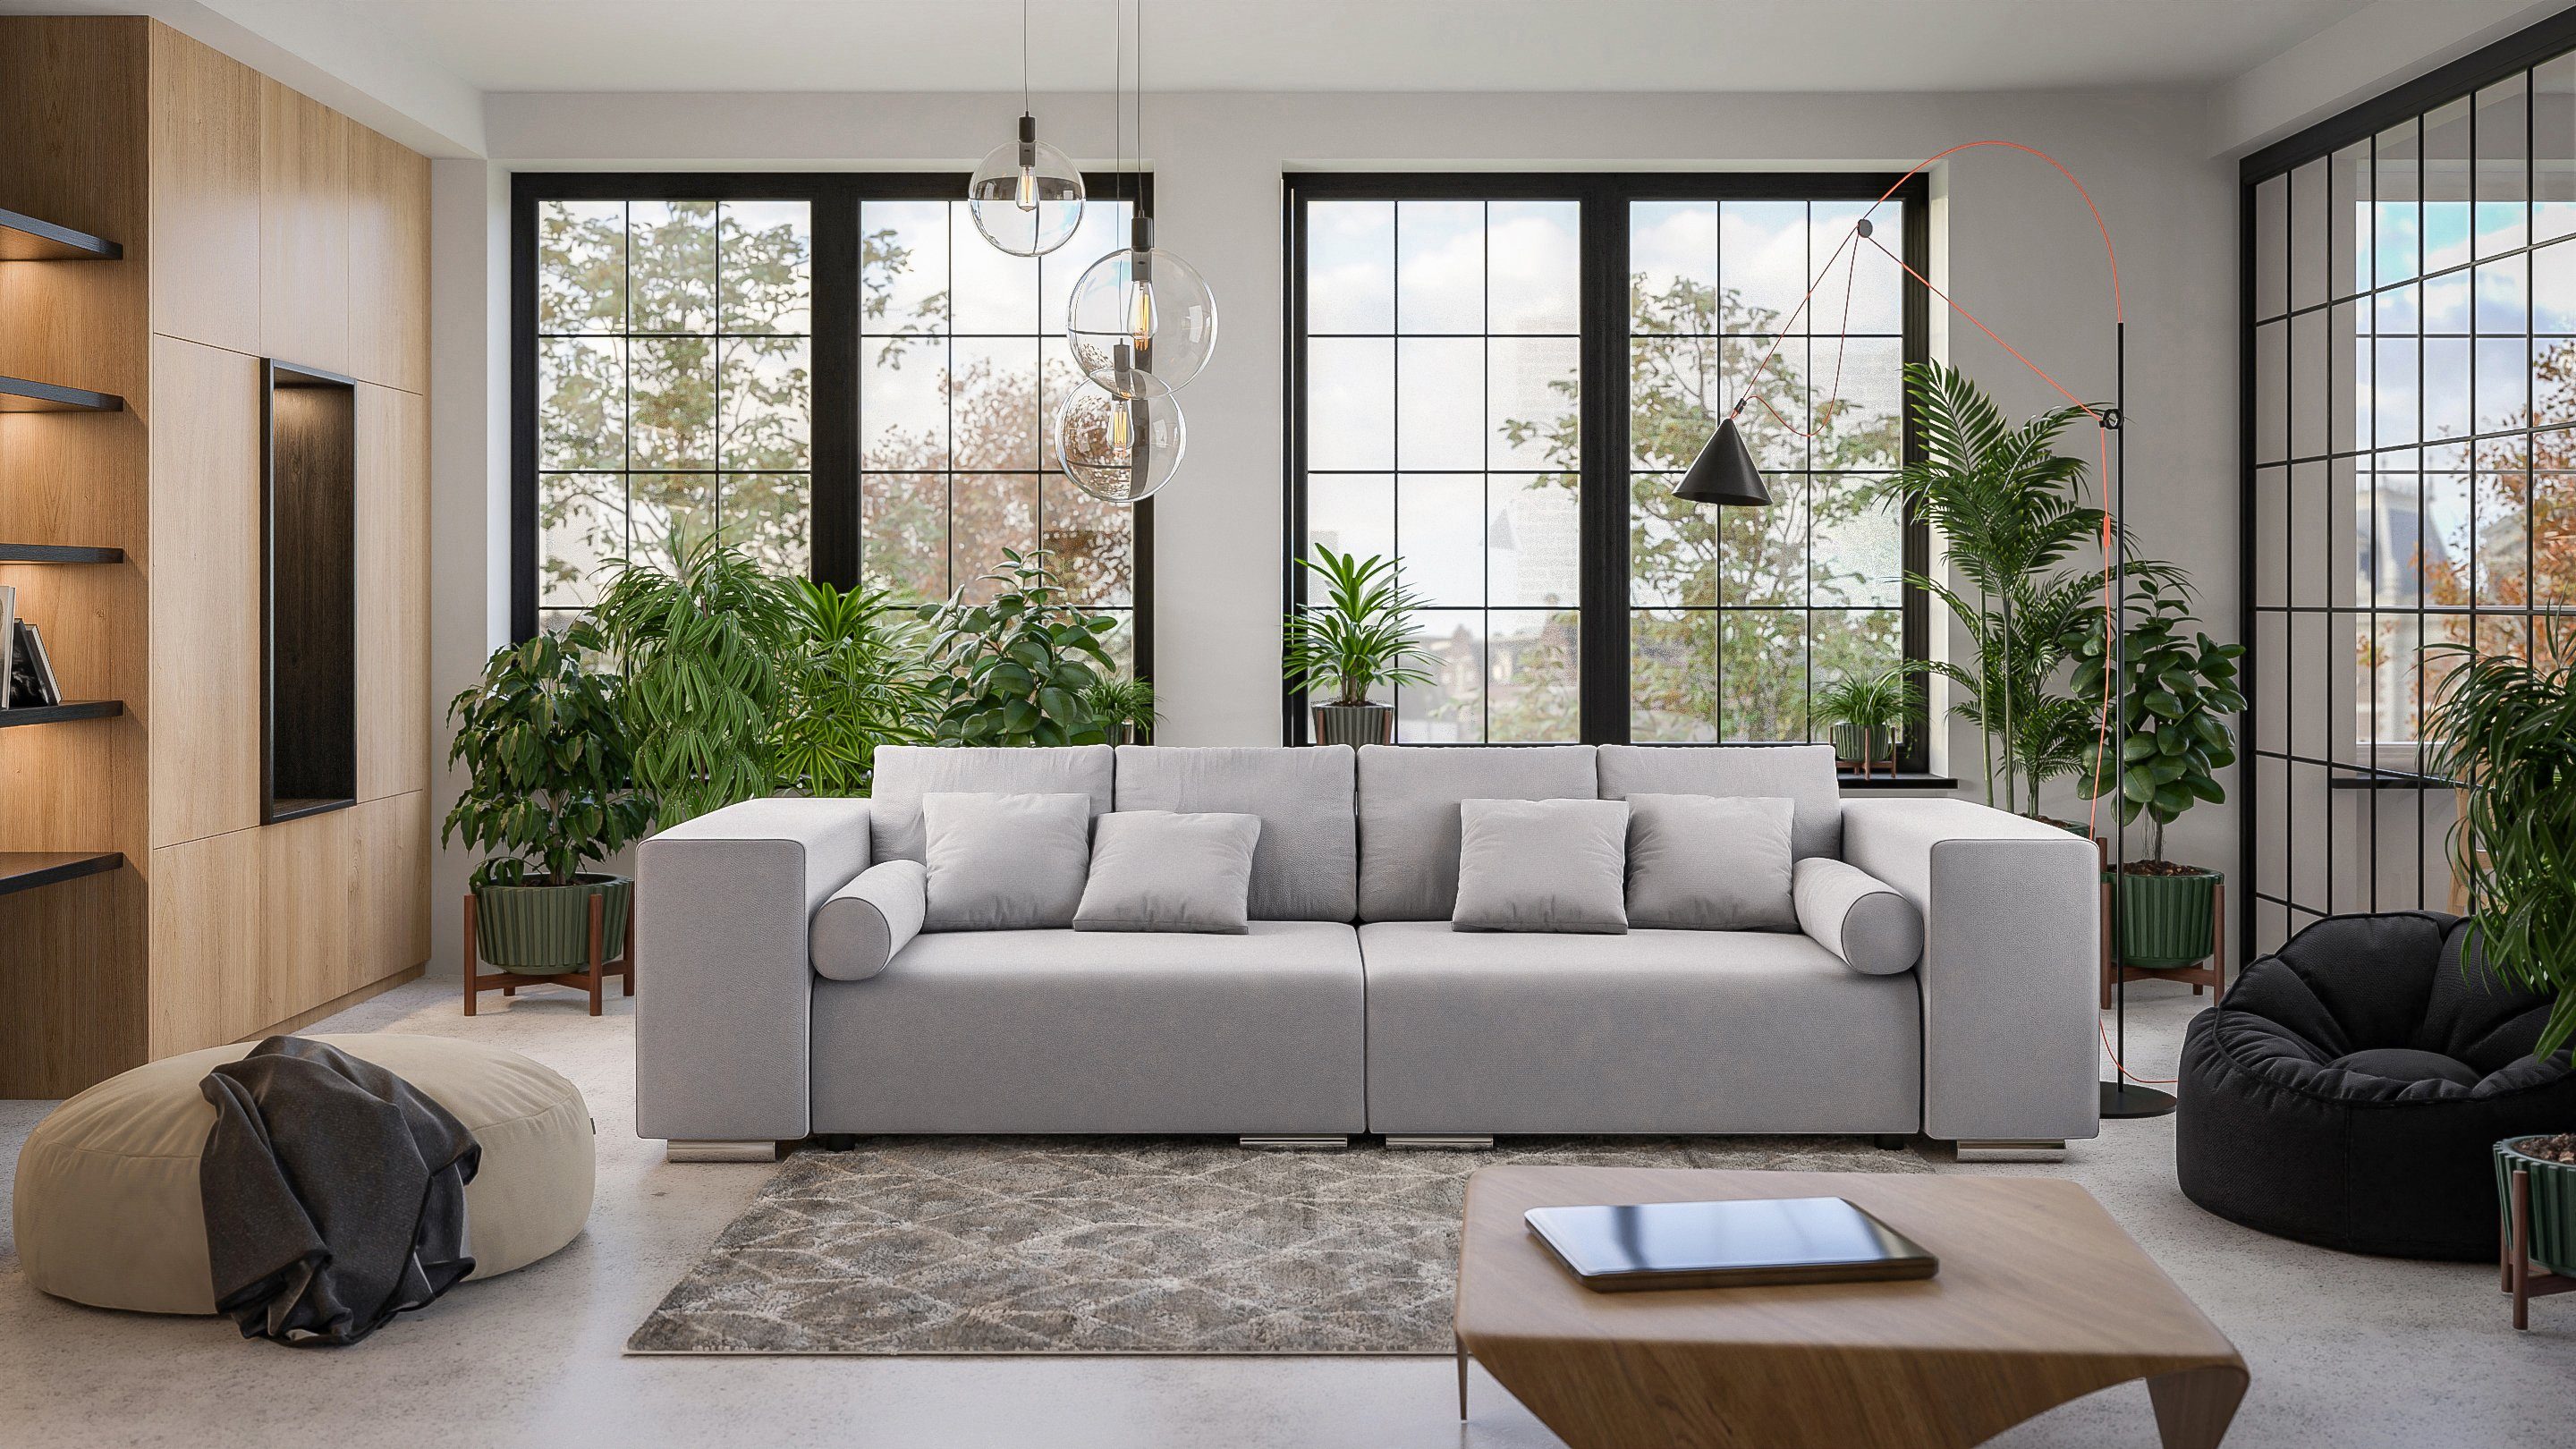 Cork mit S-Style Wellenfederung Schlaffunktion, Big-Sofa mit Möbel Silber 5-Sitzer